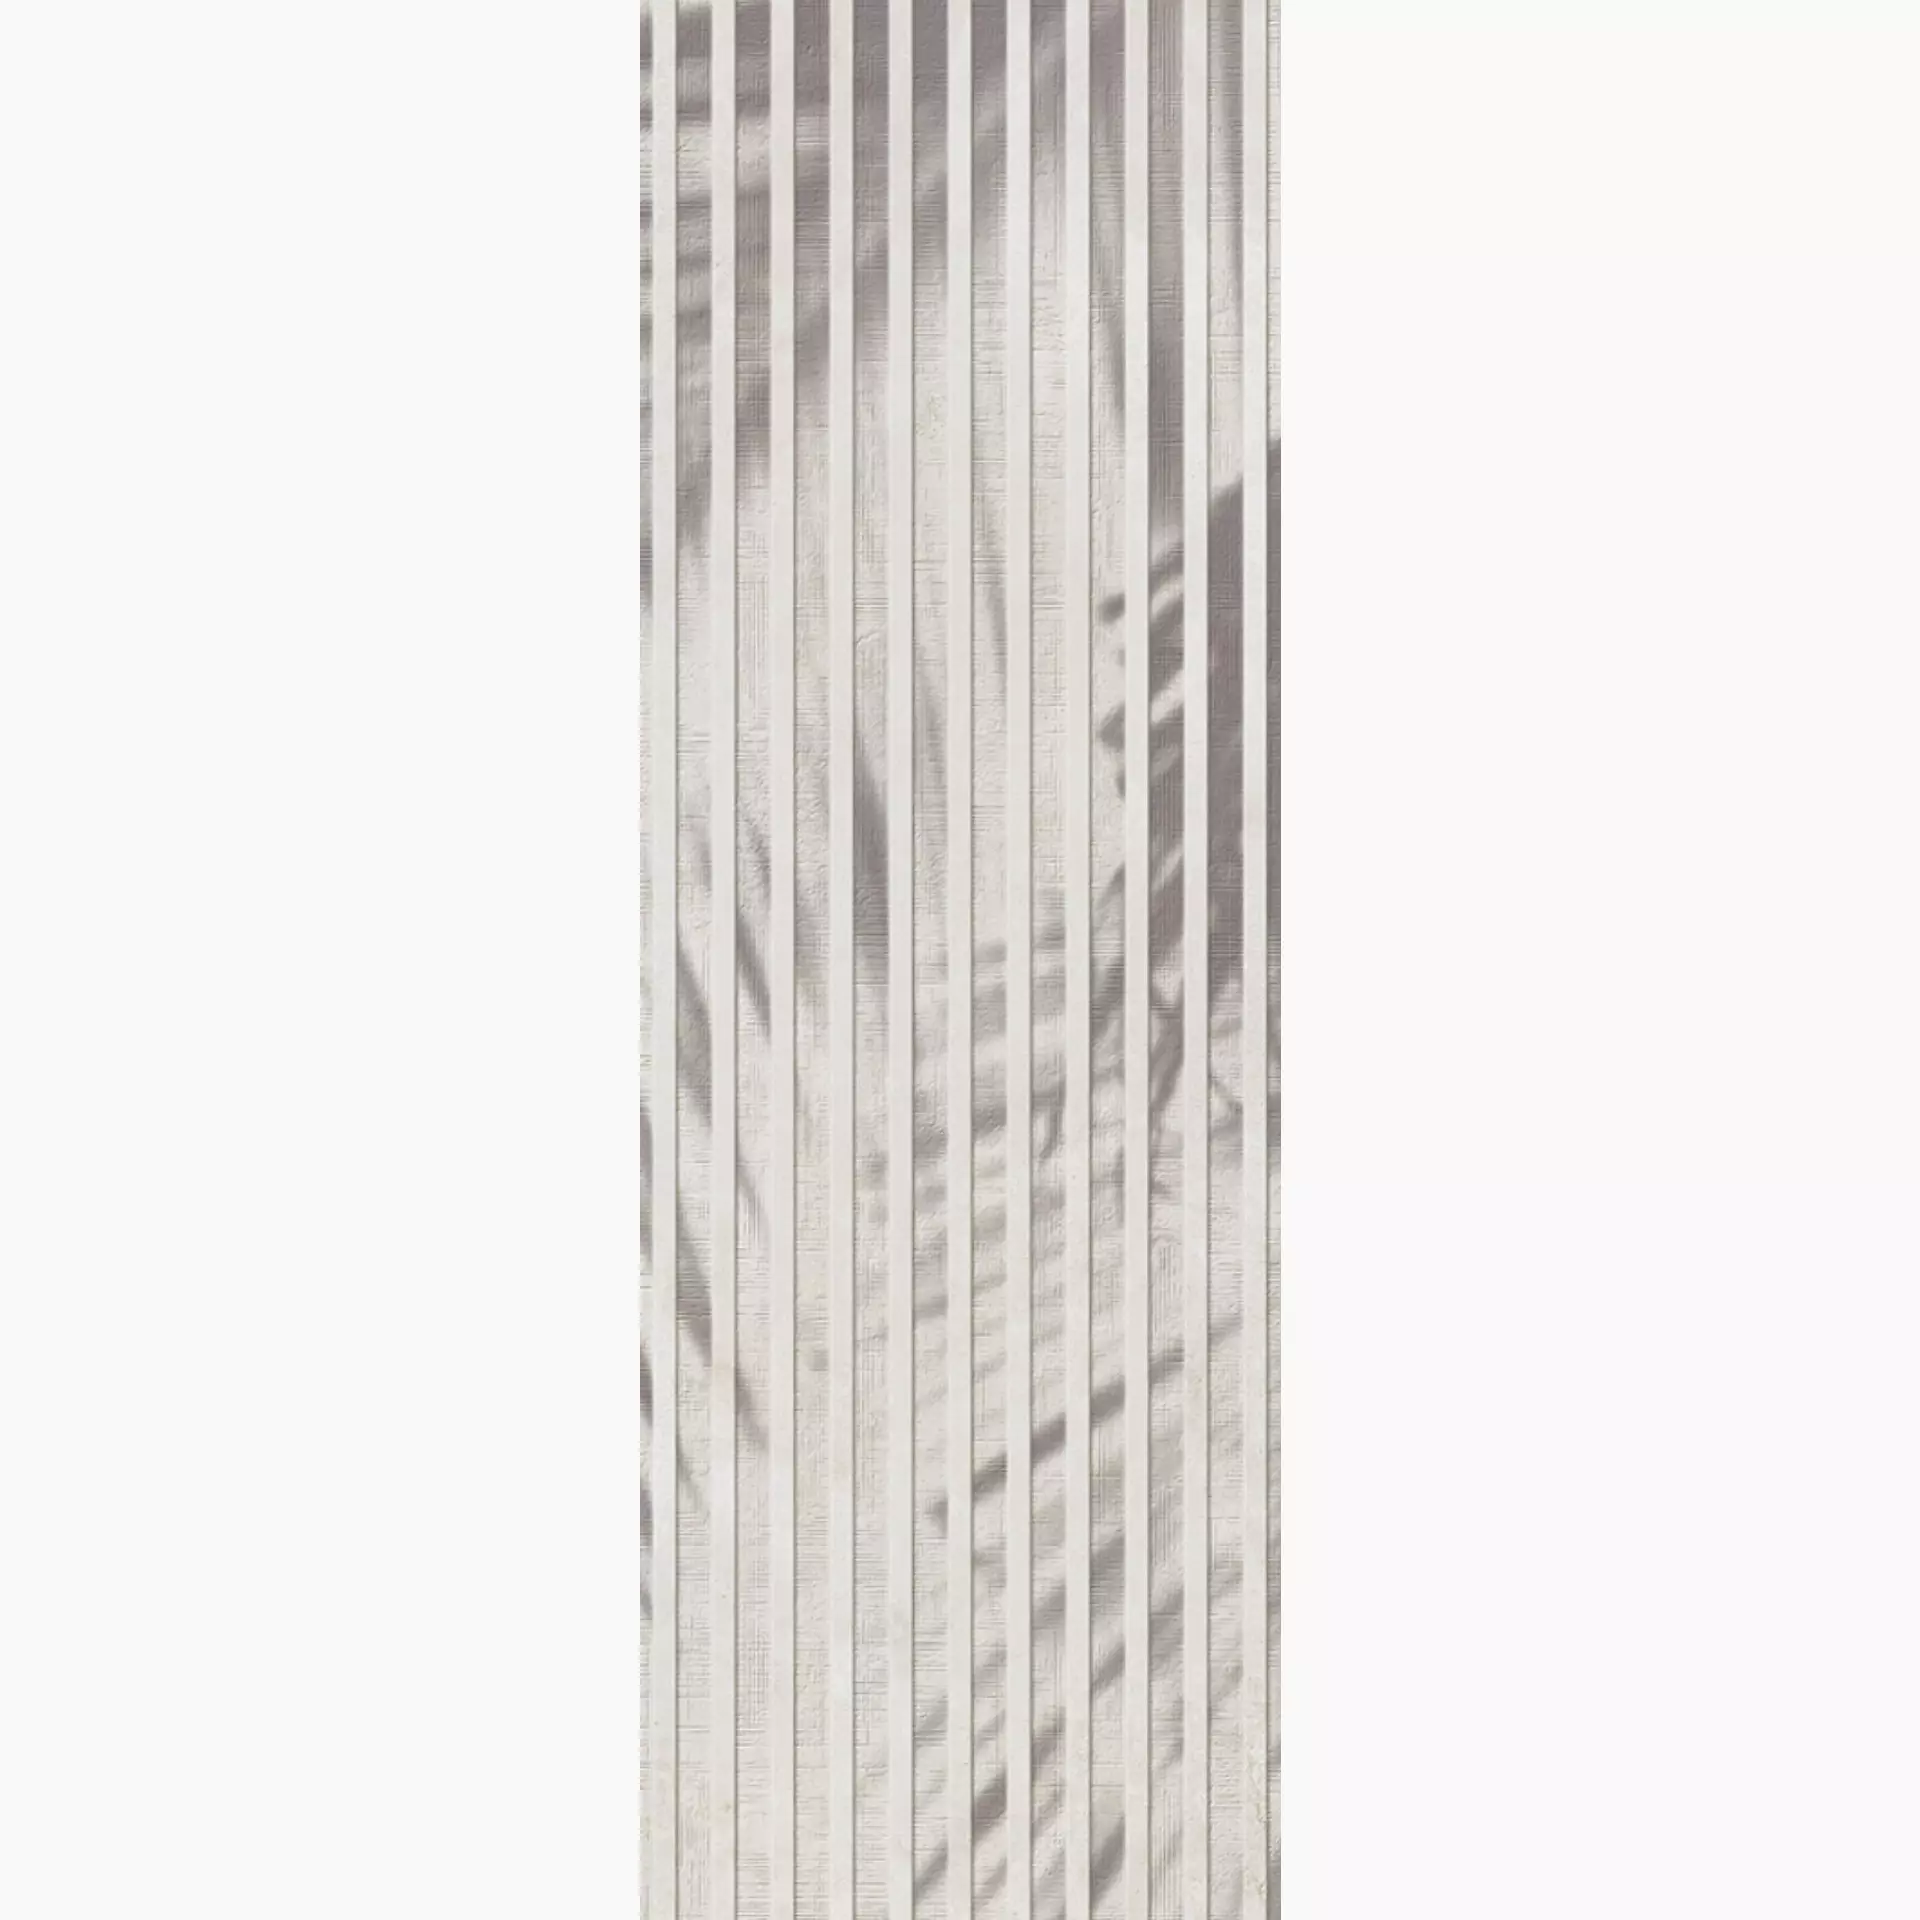 Villeroy & Boch Ombra White Matt Dekor 1310-IA12 30x90cm rektifiziert 10mm